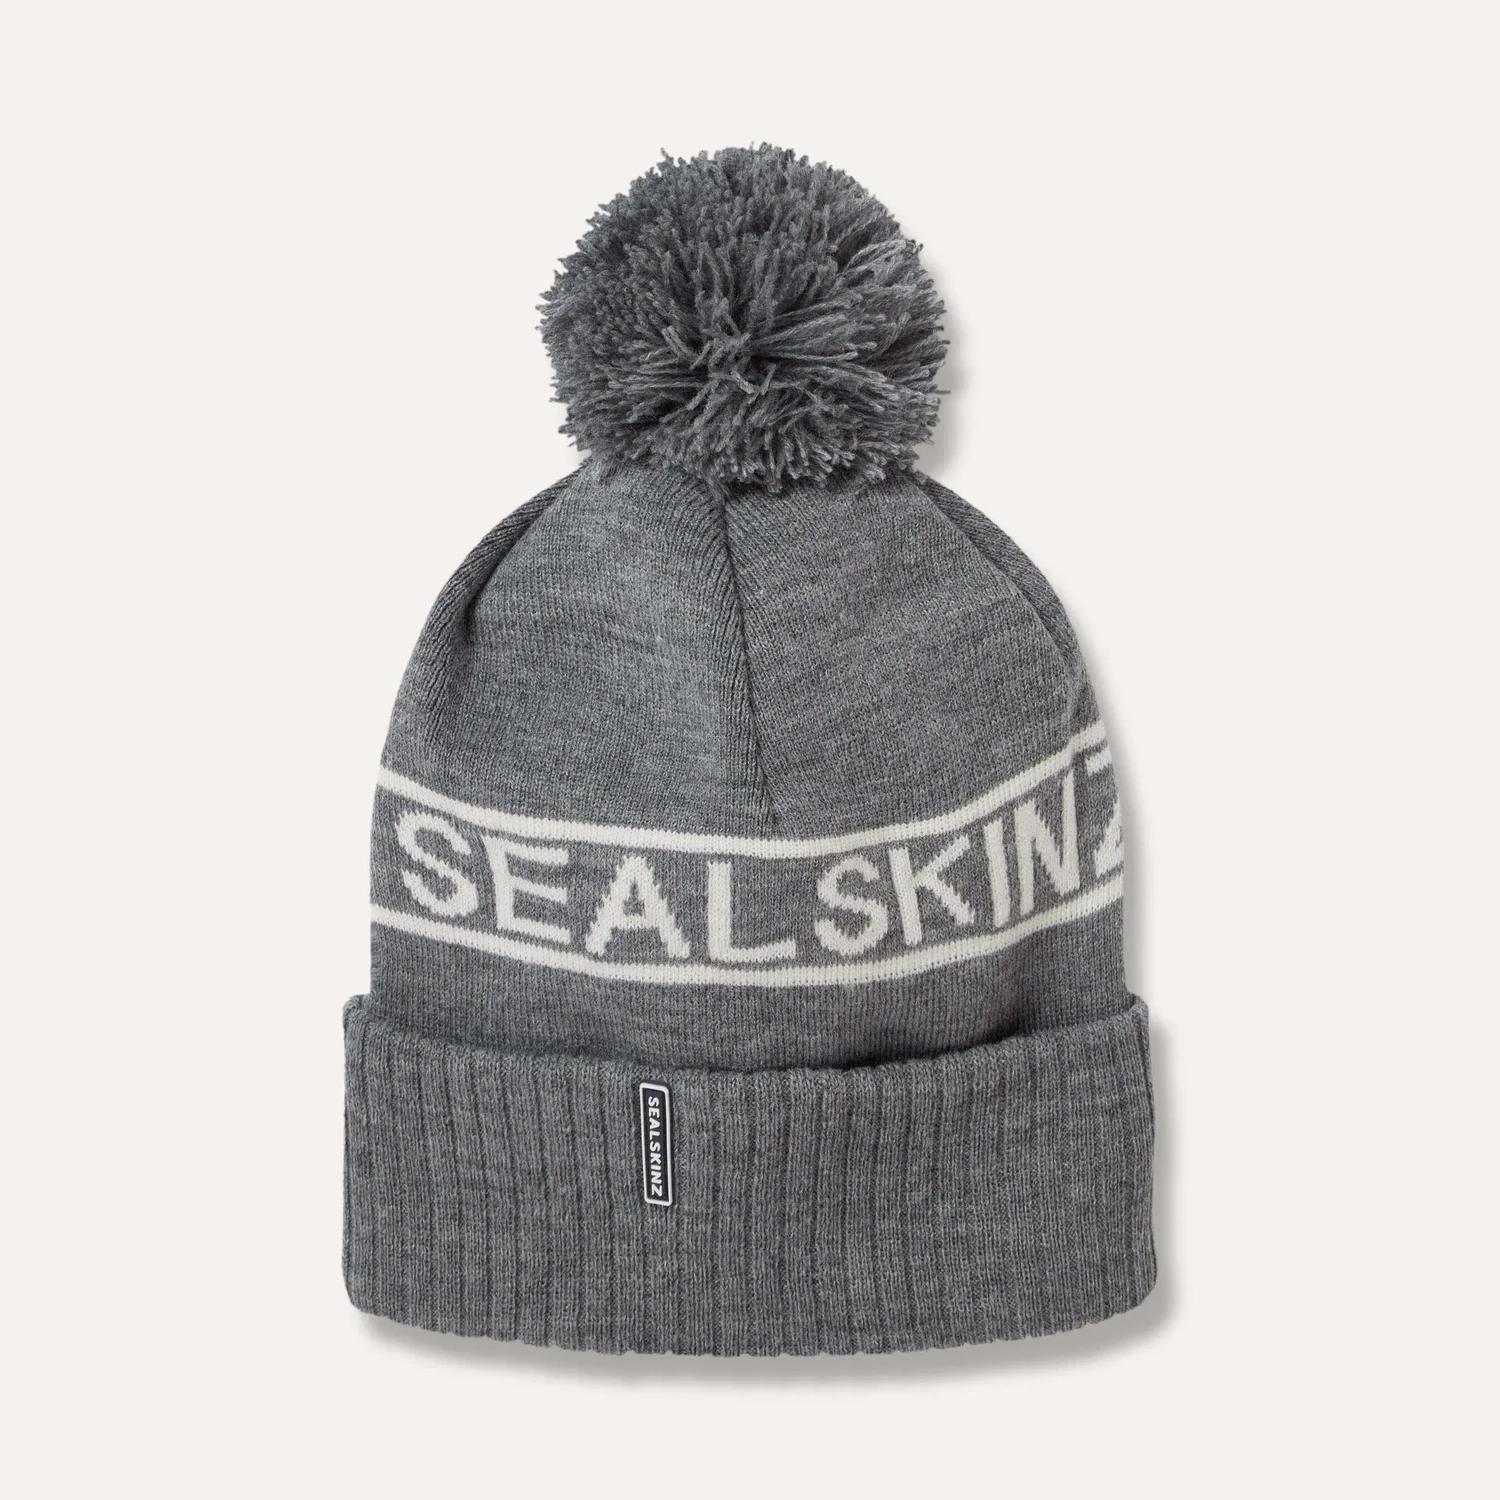 SealSkinz Heacham Waterproof Cold Weather Icon Bobble Hat - wasserdichte Bommelmütze, Größe: S/M